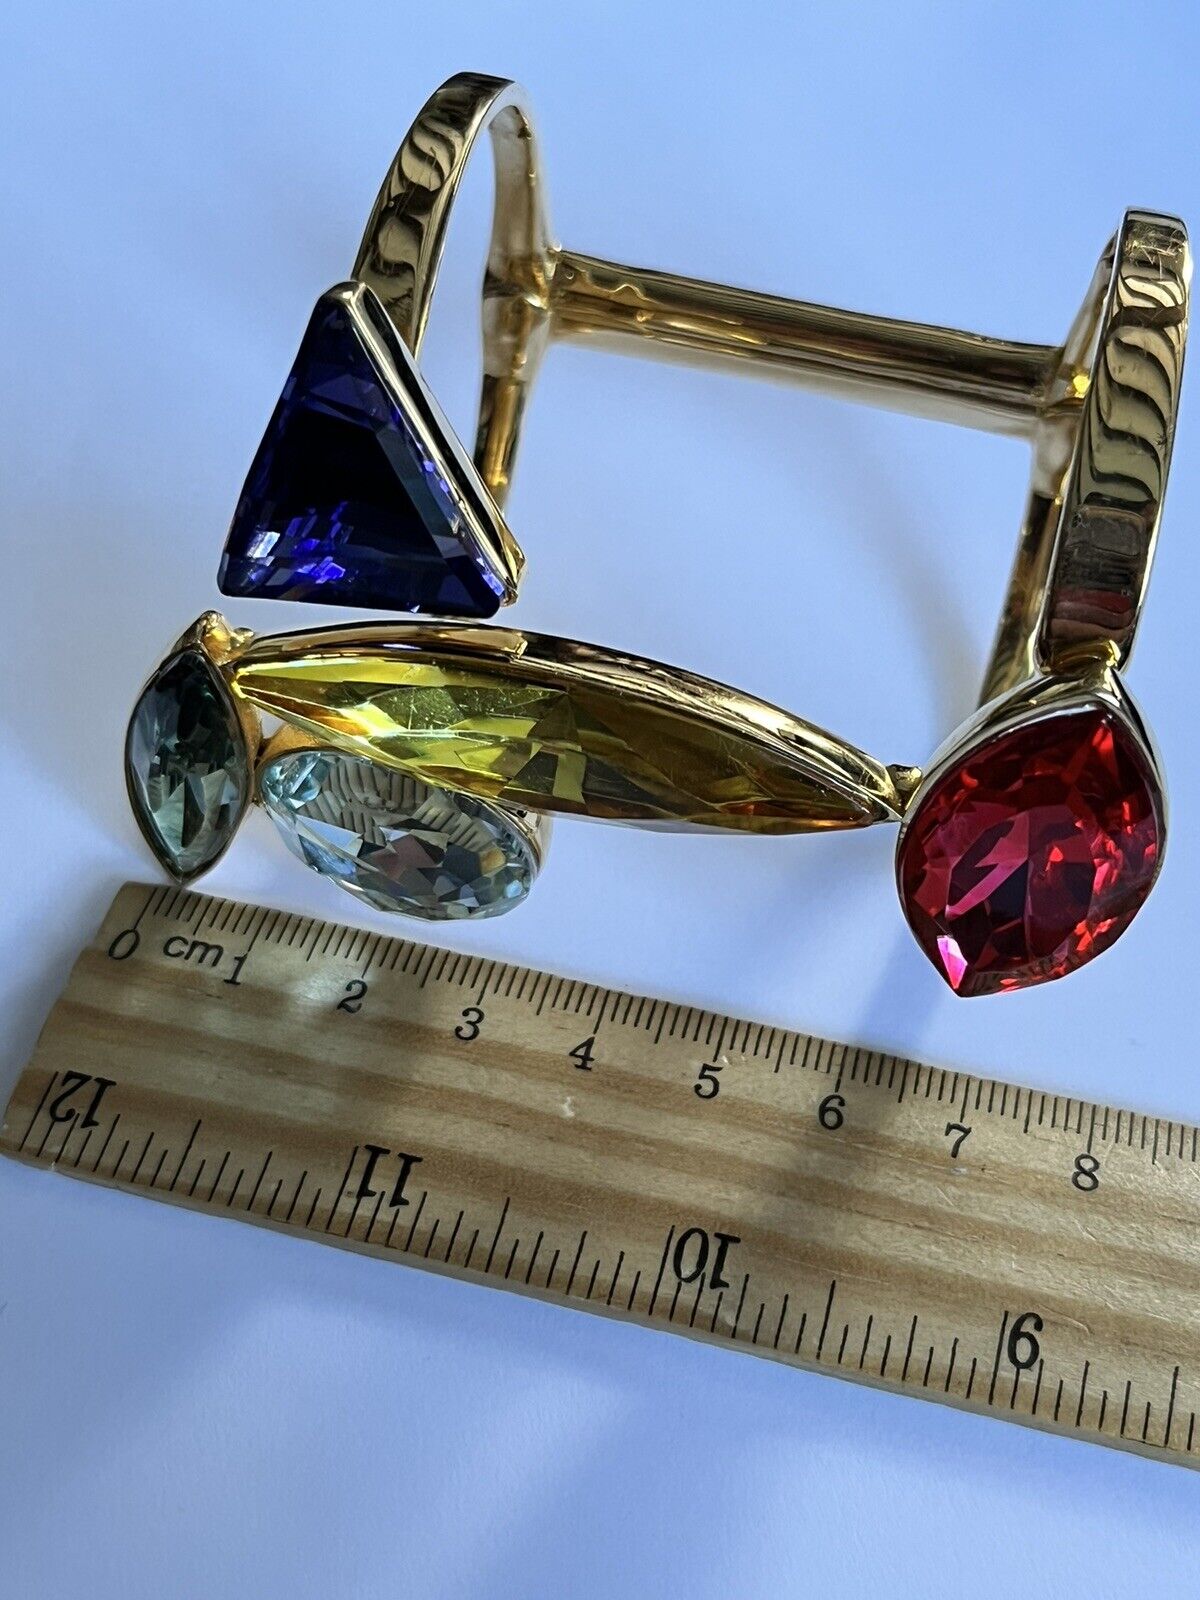 Vintage Double Cuff Gold Plated Statement Multicoloured Diamanté Bracelet